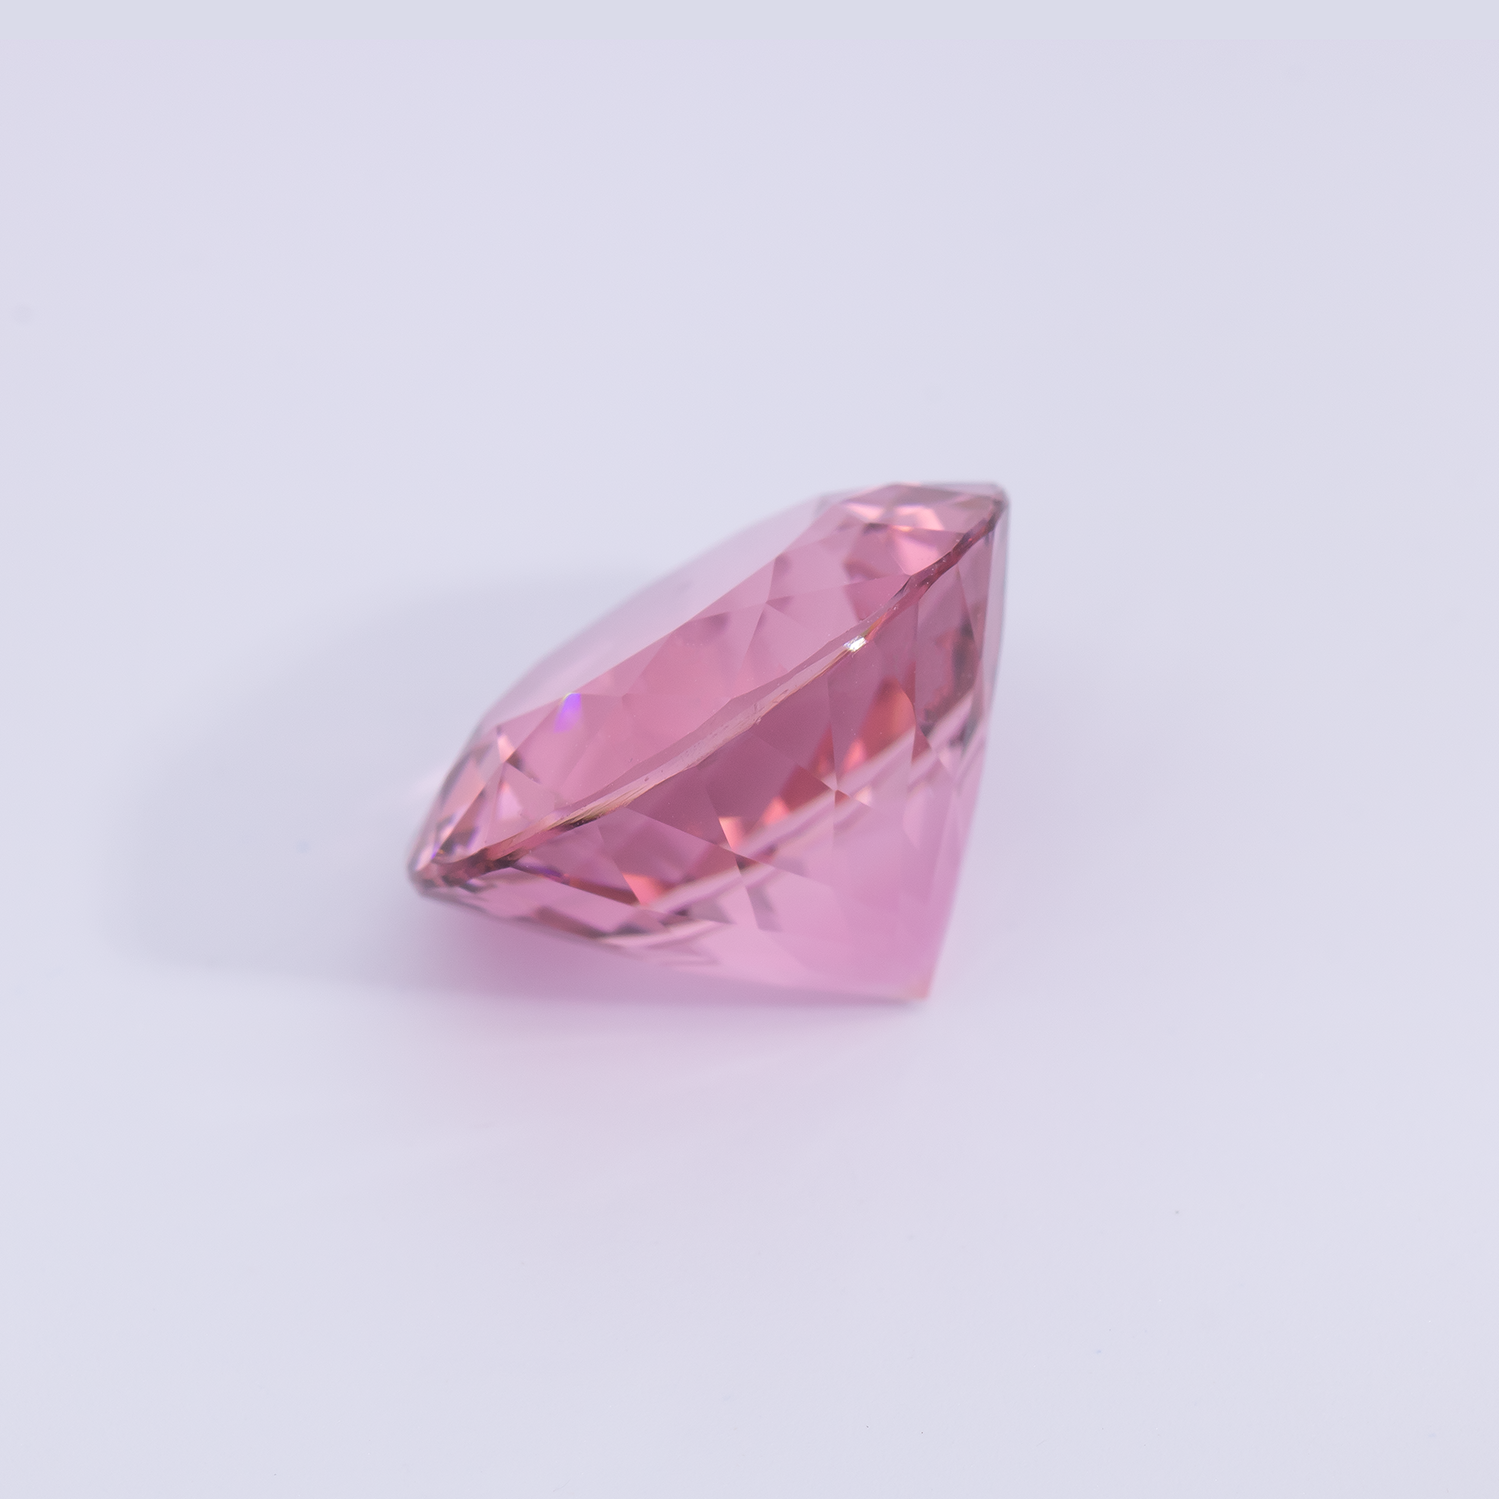 Tourmaline - pink, round, 14x14 mm, 10.59 cts, No. TR991067